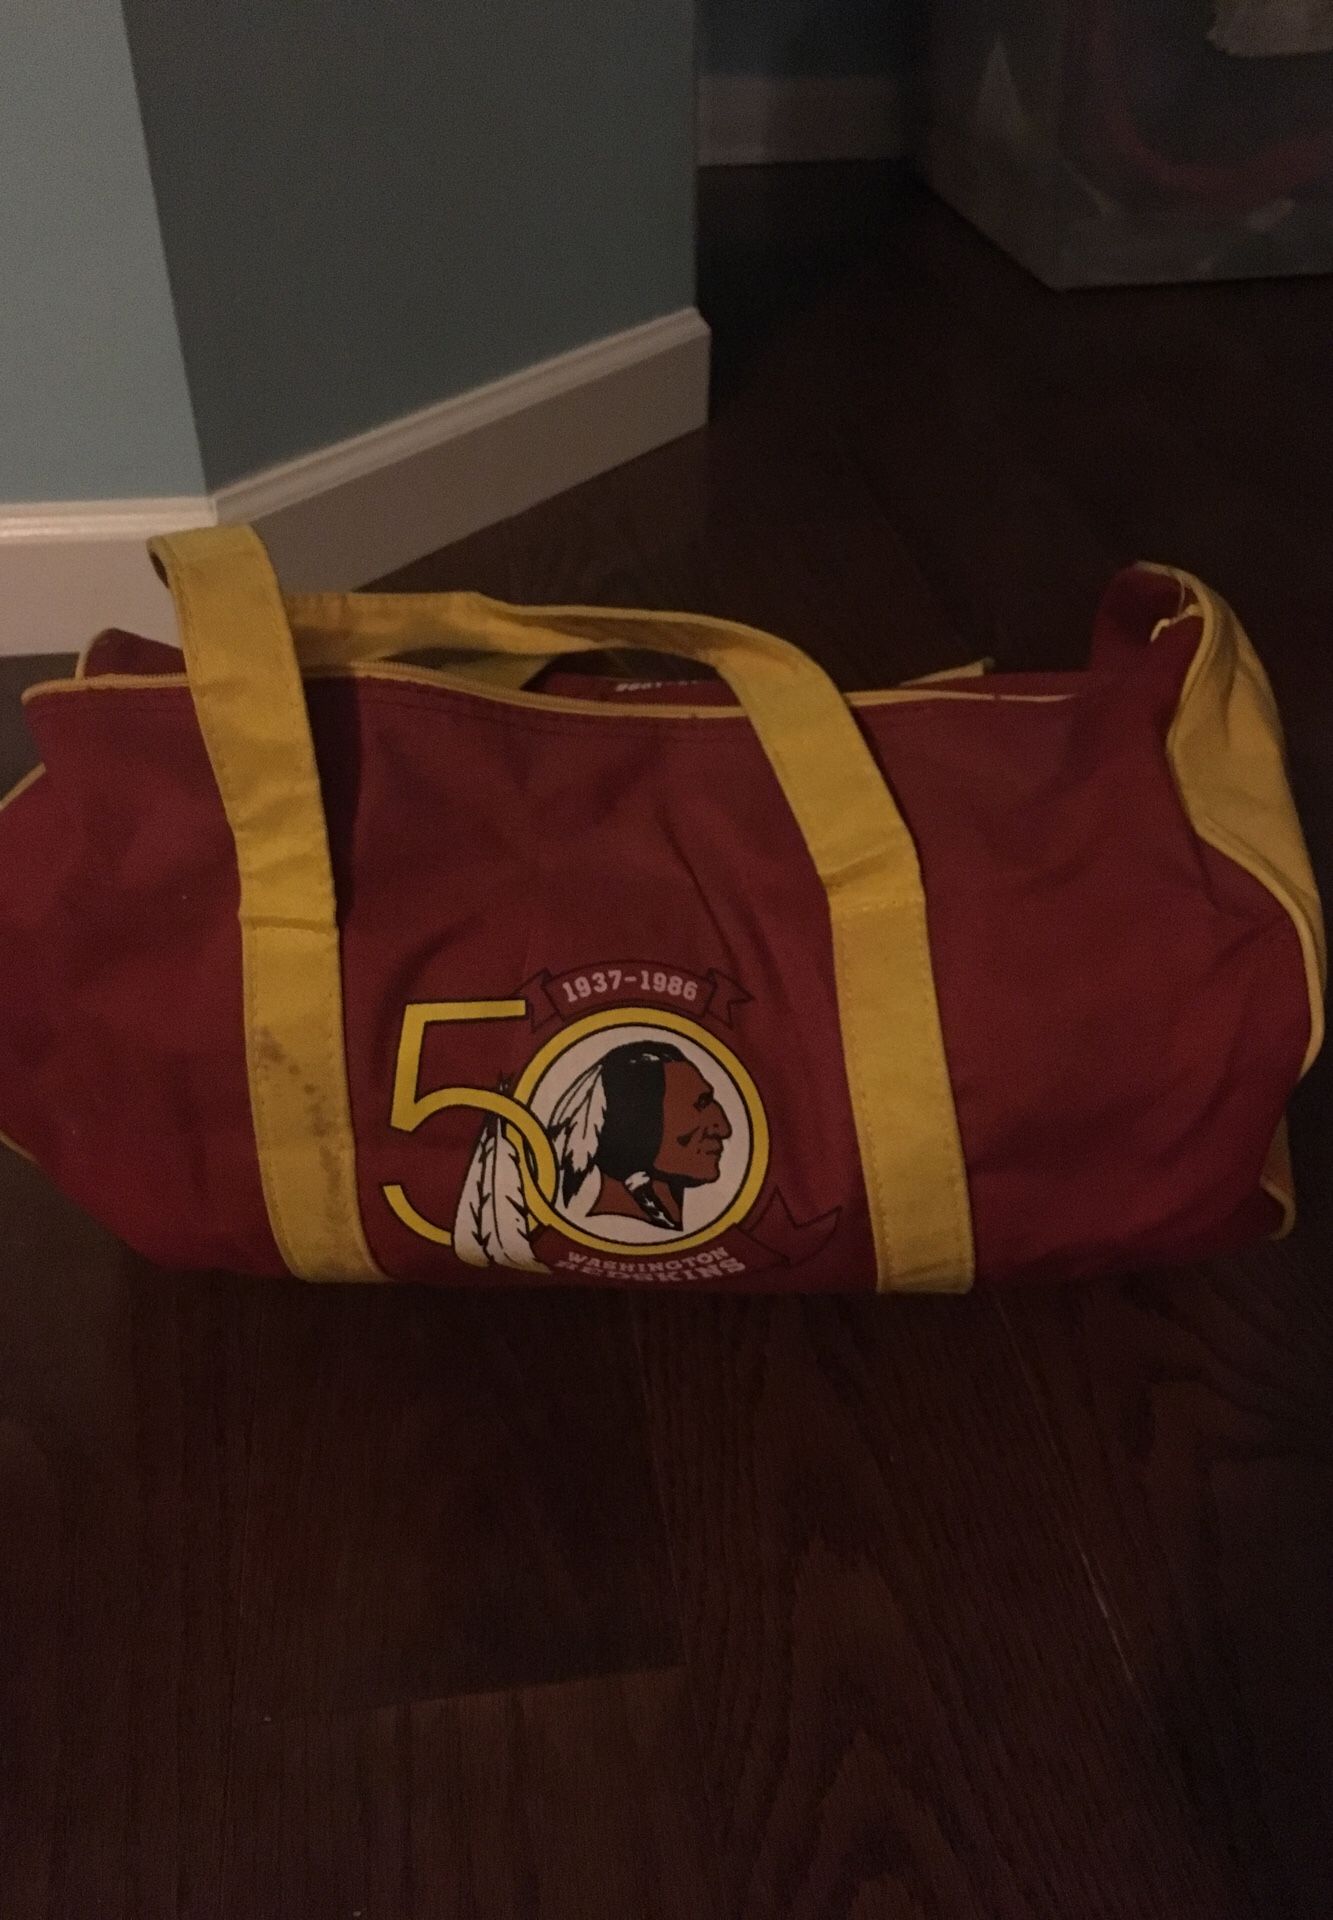 Washington Redskins 50th anniversary duffel bag